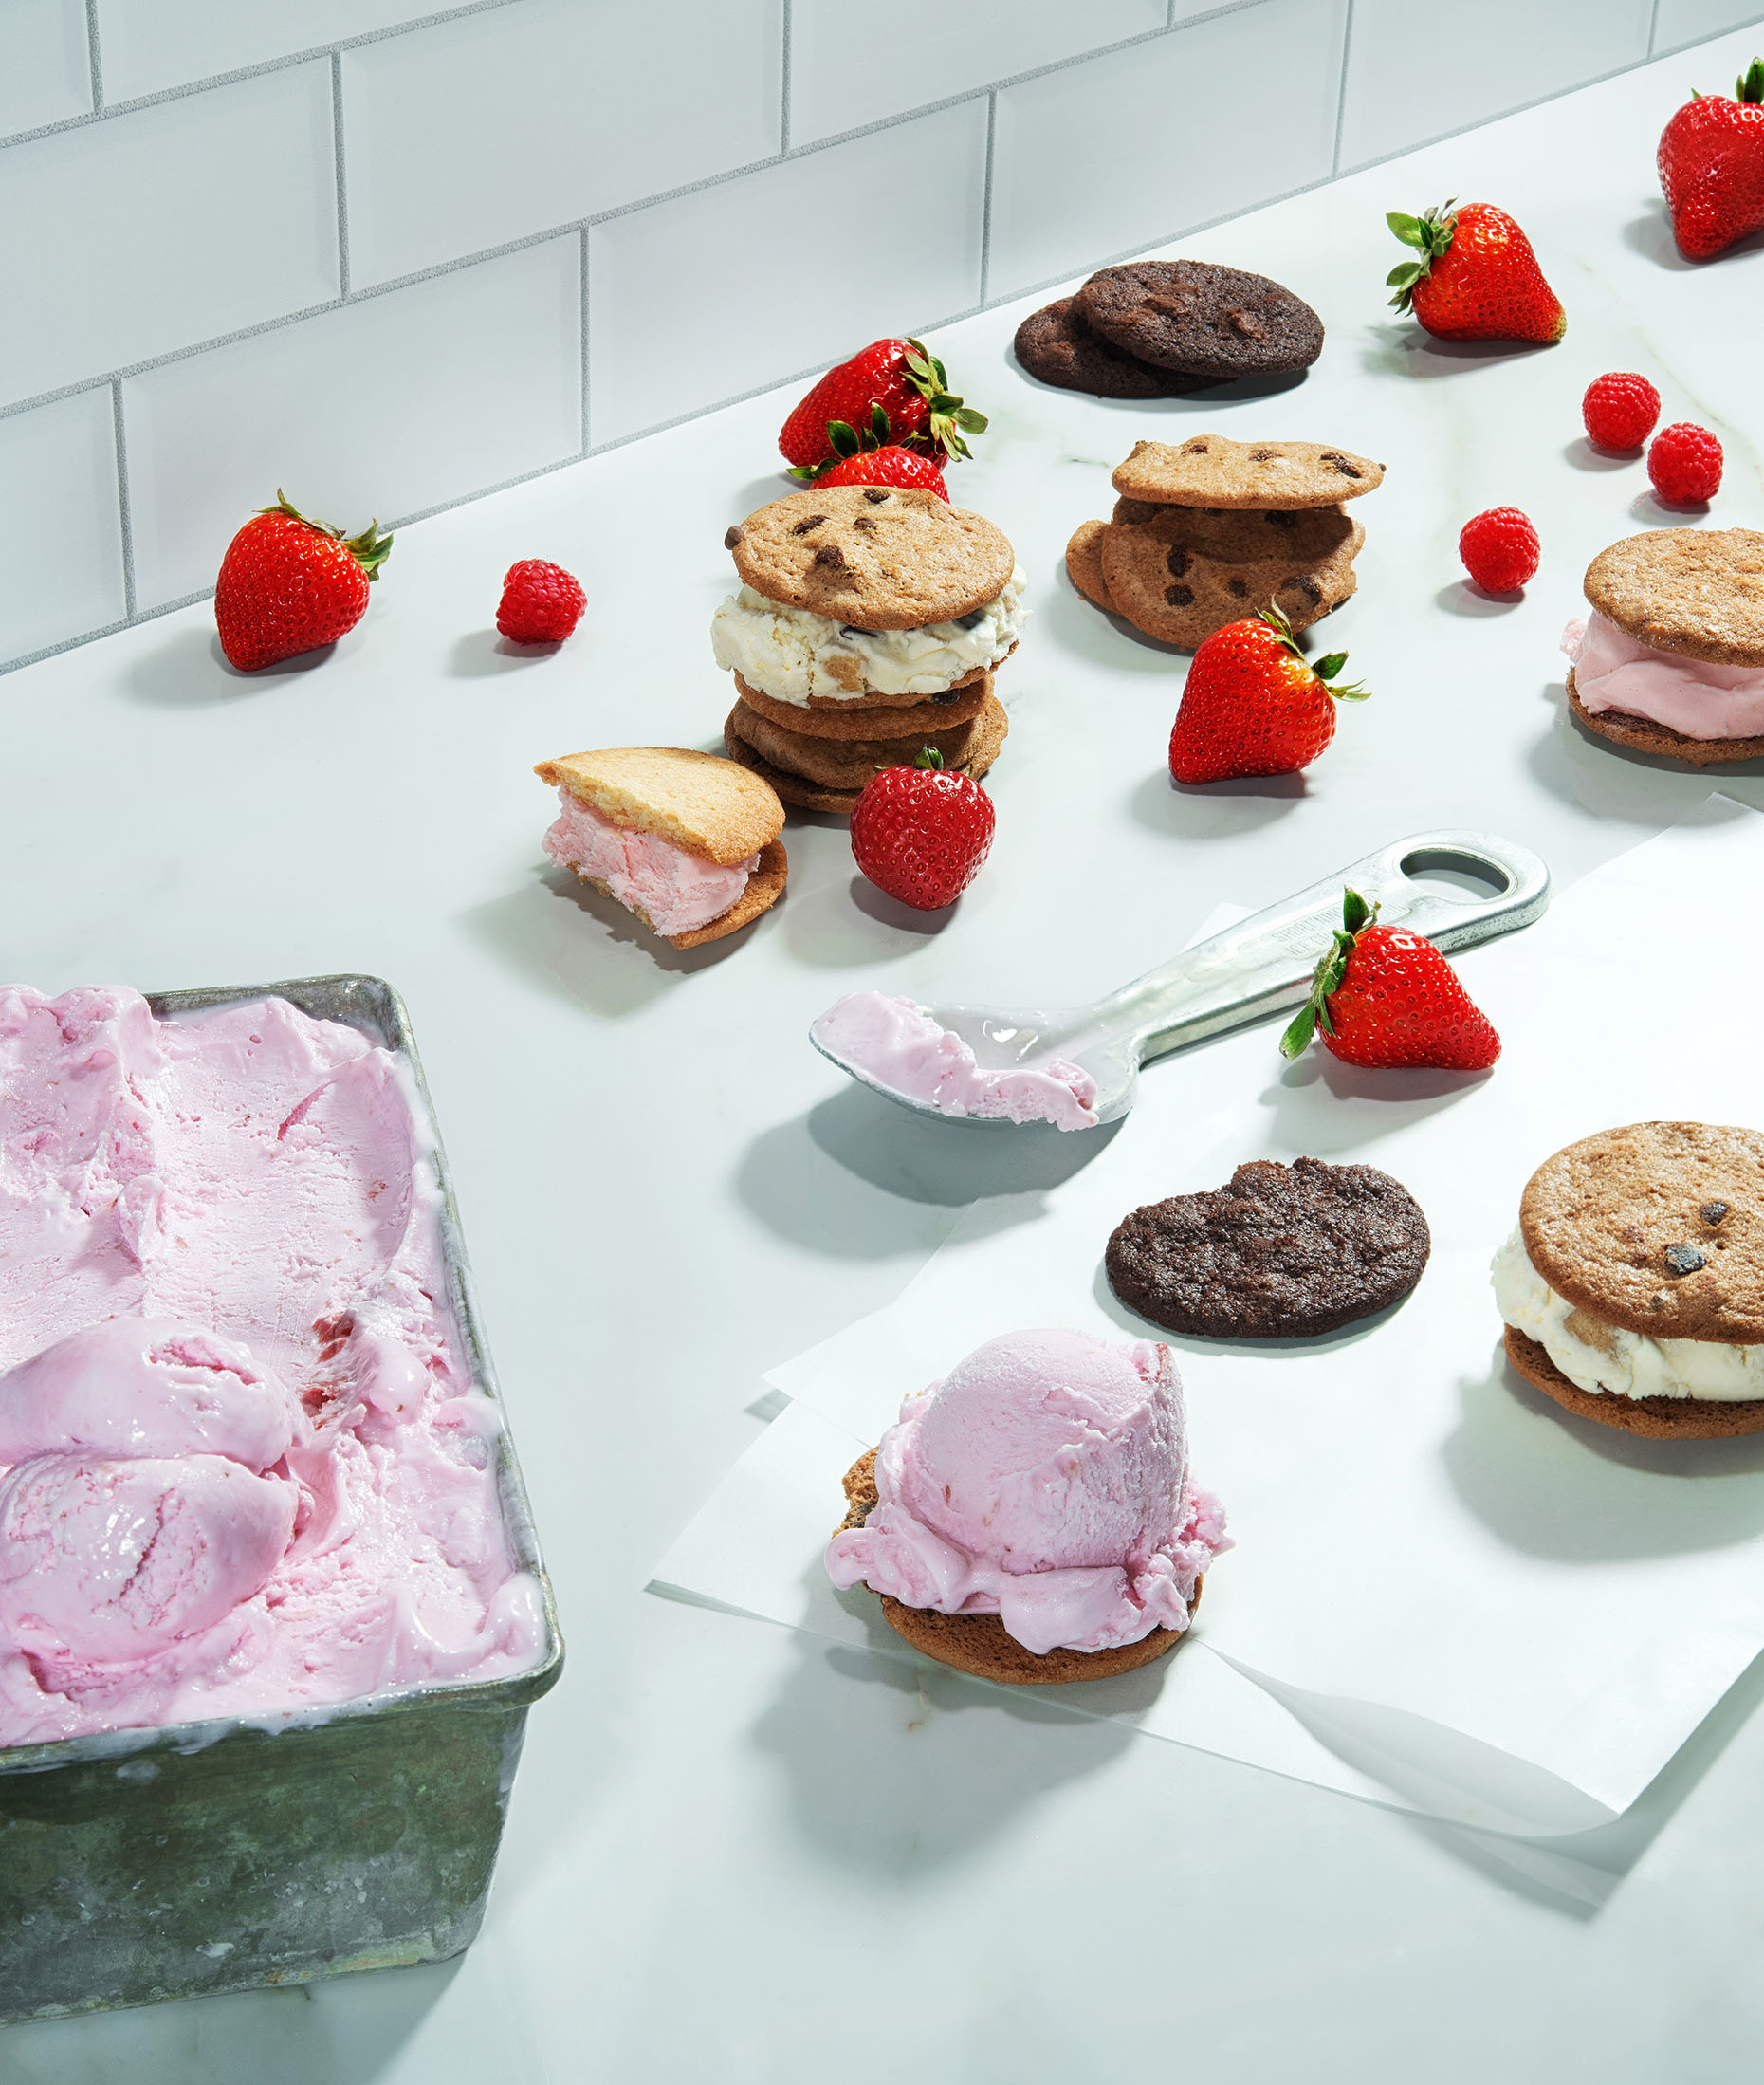 New-york-ice-cream-photography-ice-cream-sandwiches